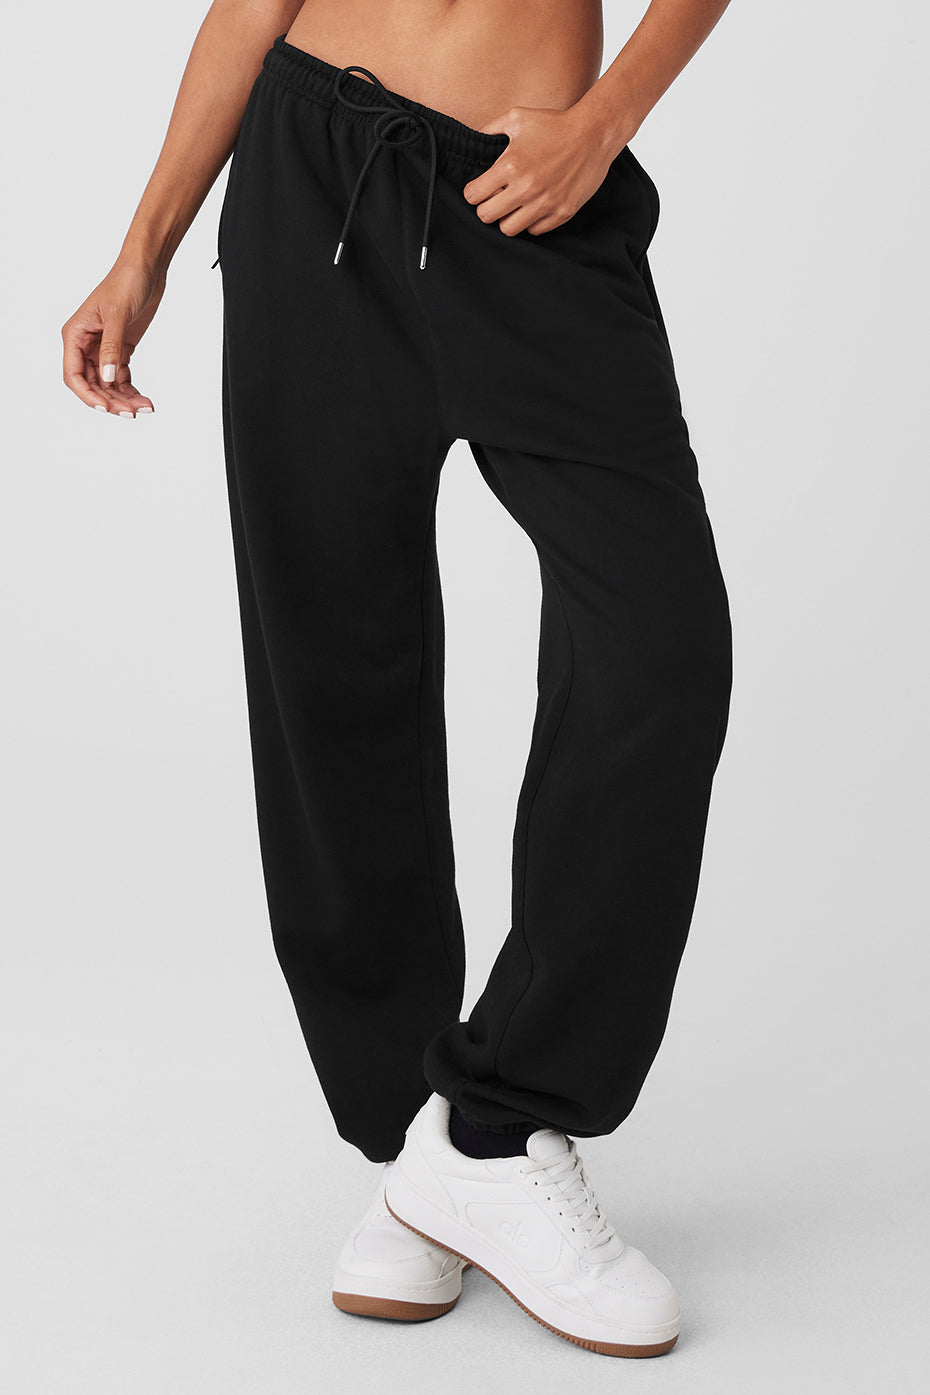 How To Wear Black Sweatpants? – solowomen